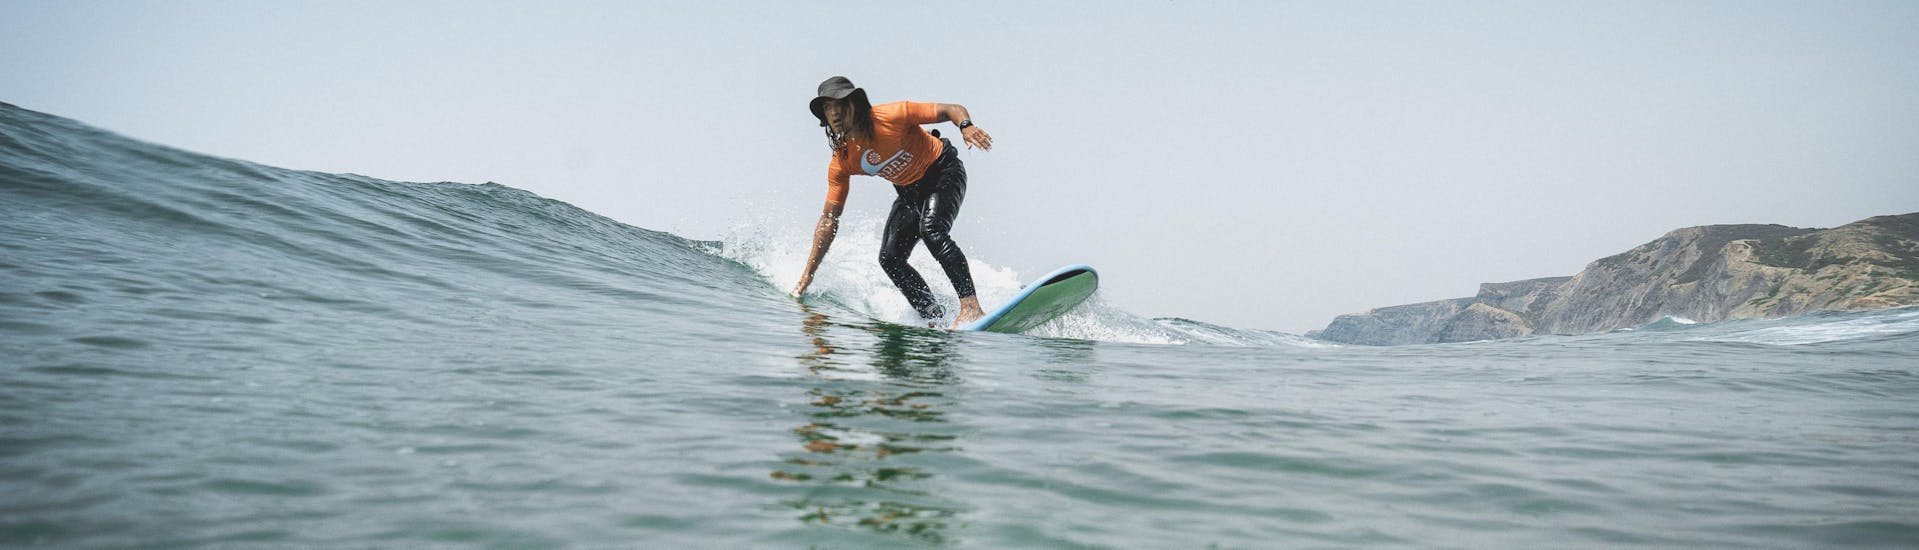 Un participante montando una pequeña ola durante las Clases Particulares de Surf (a partir de 6 años) en Praia Castelejo con Good Feeling Surf School Algarve.